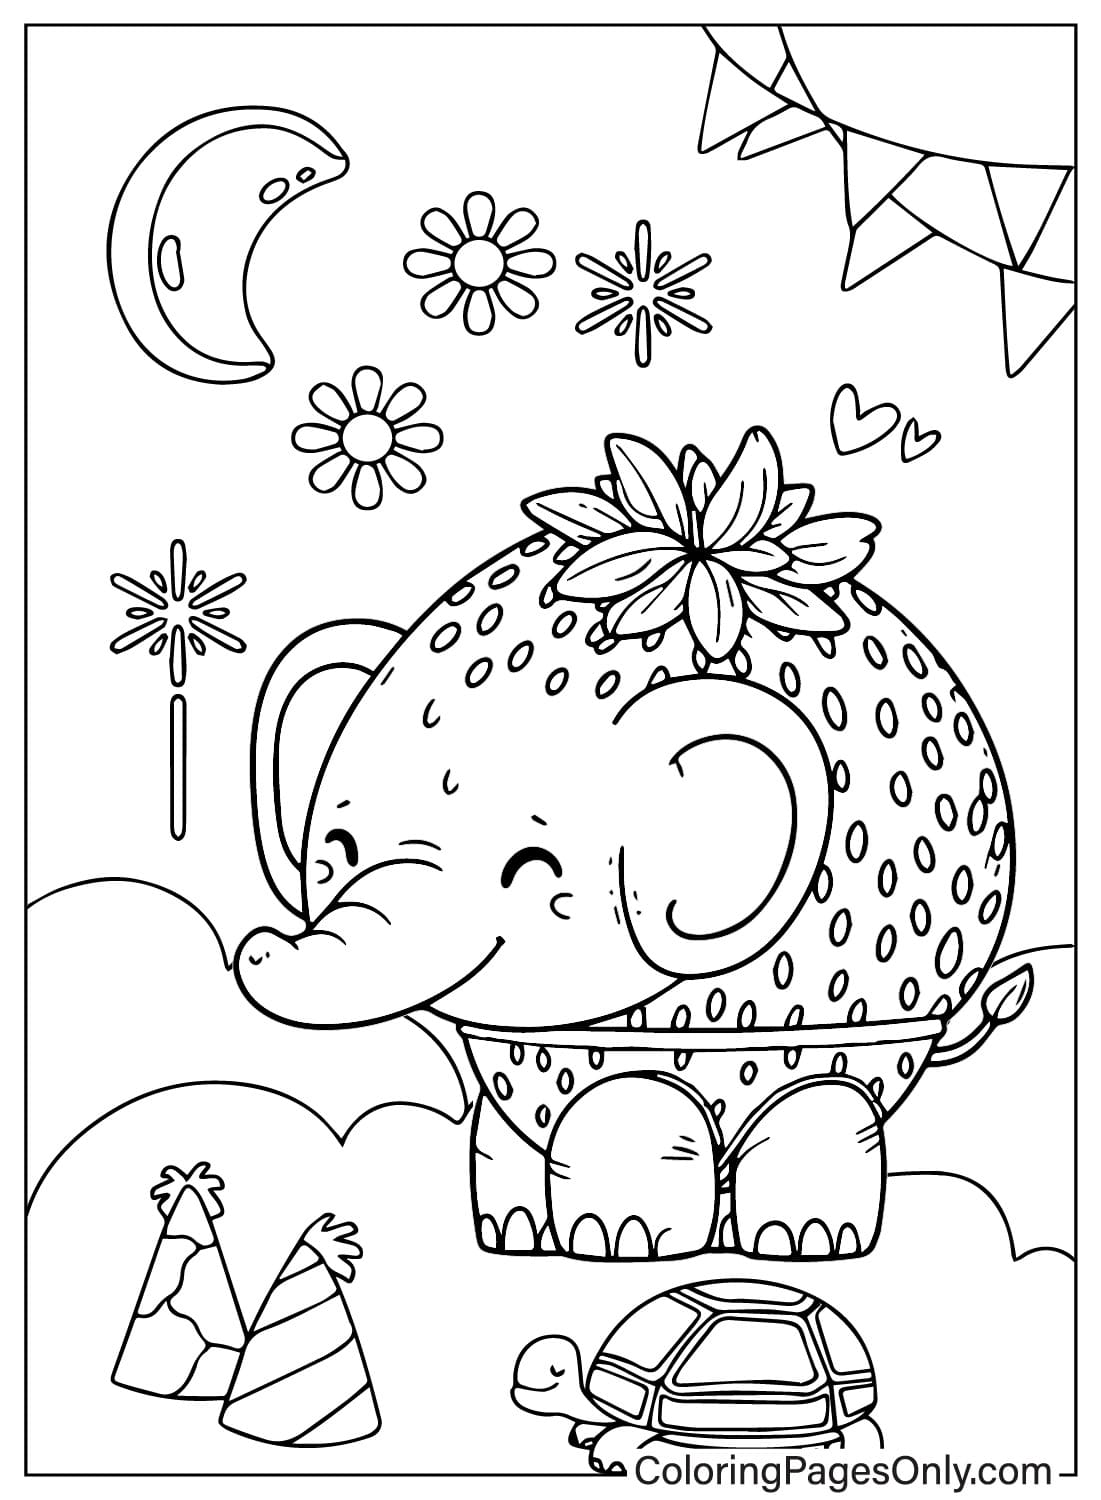 Página para colorear de Elefante de Fresa Kawaii de Elefante de Fresa